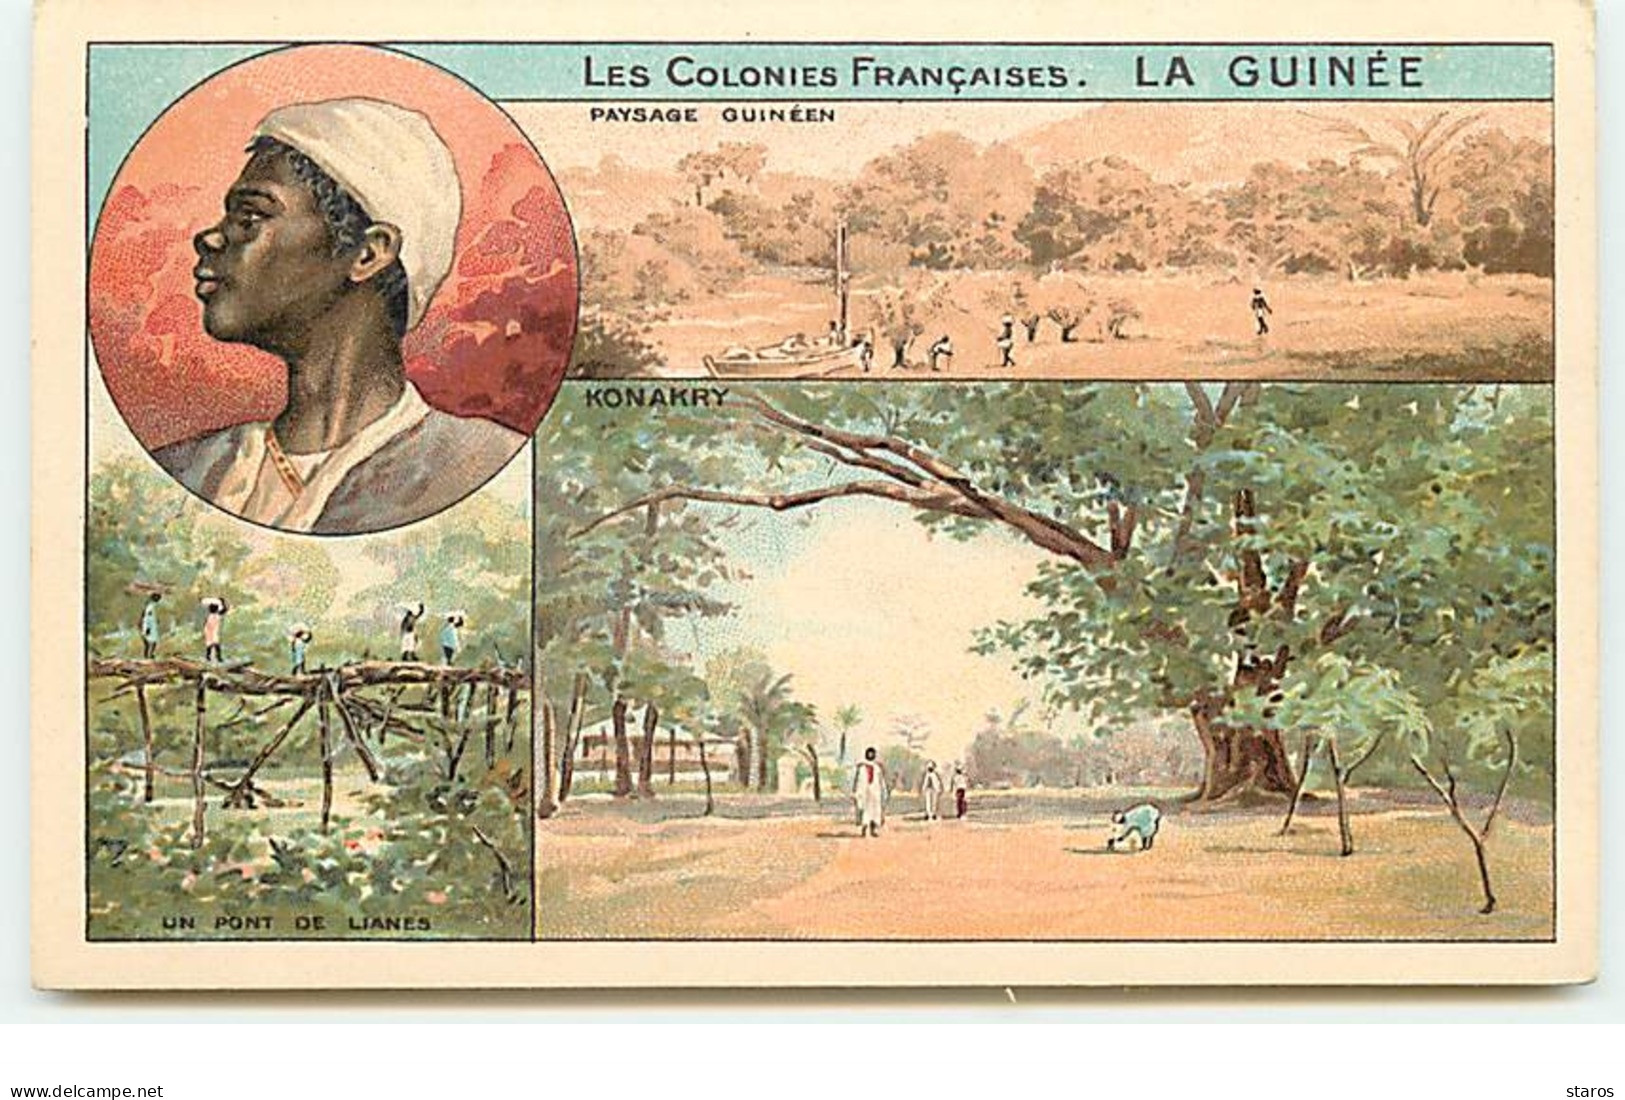 Les Colonies Françaises : La Guinée - Paysage Guinéen (Multi-vues) - Publicité Phoscao - French Guinea